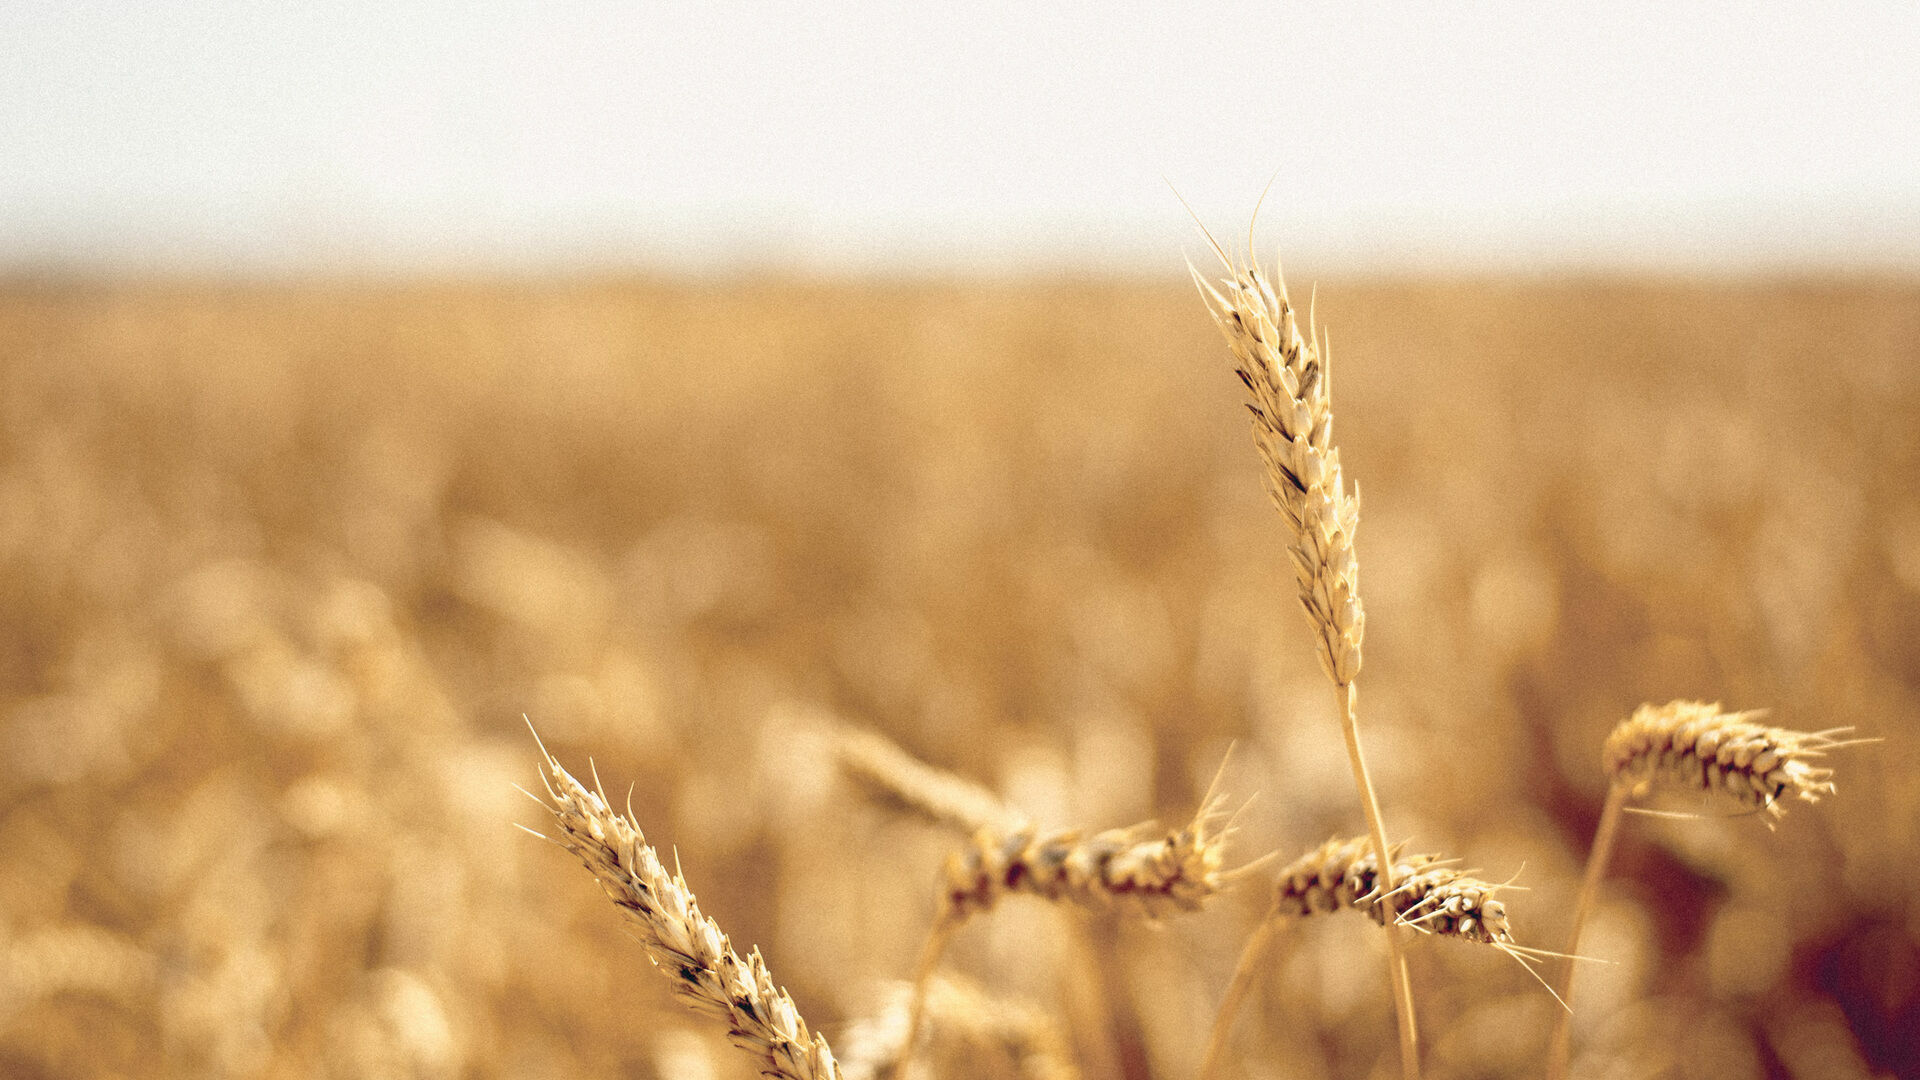 Индия запретила экспорт пшеницы в условиях мирового дефицита зерна